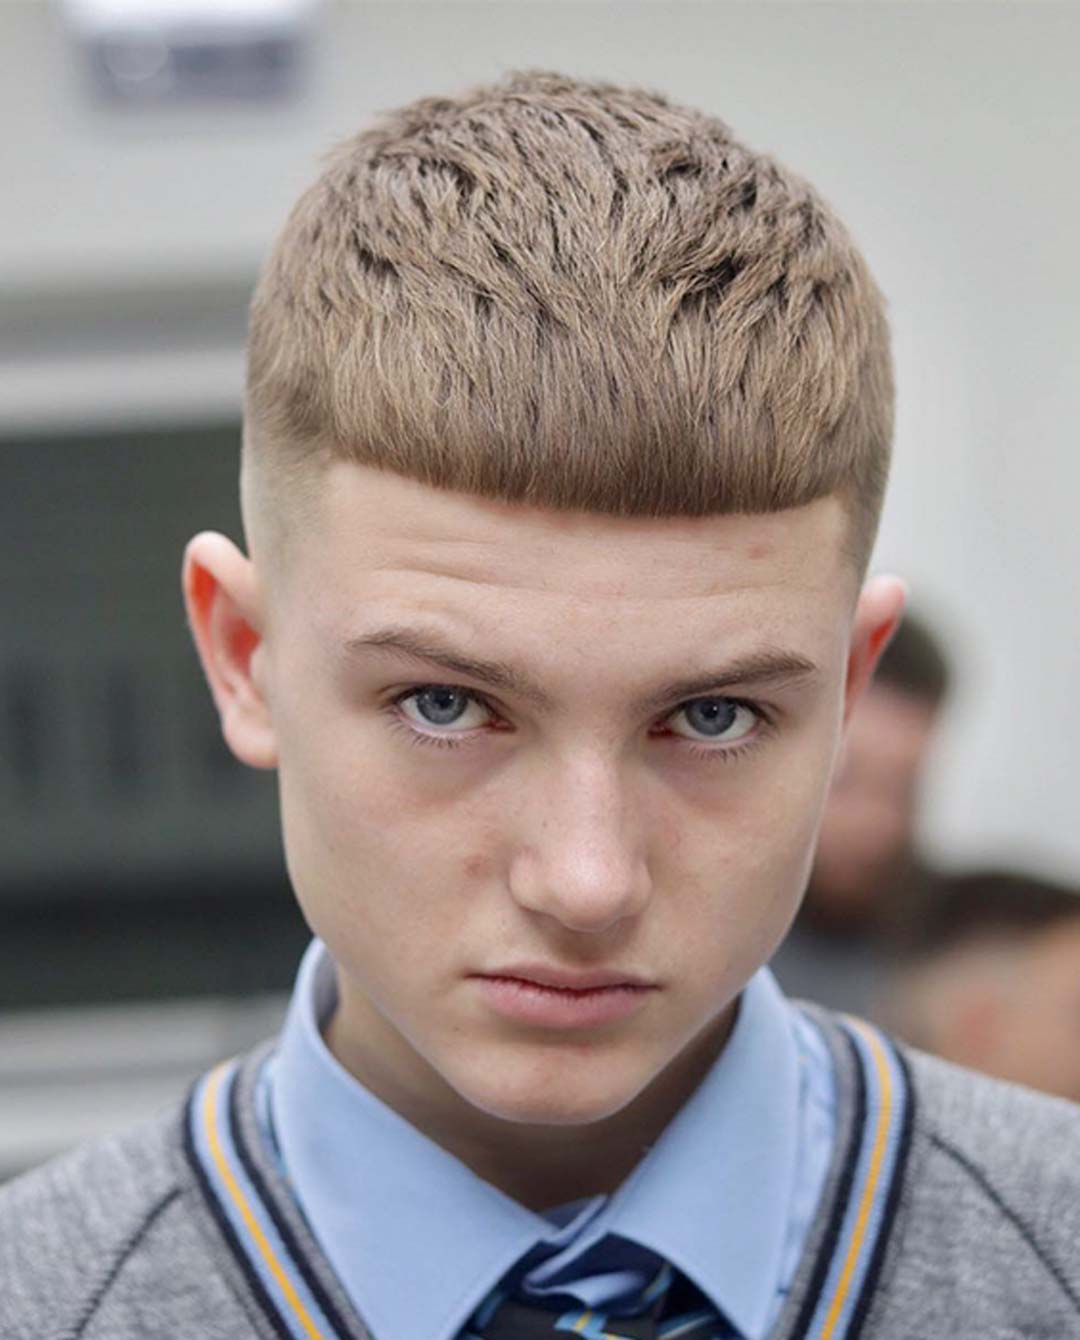 Teen Boy with Caesar Cut